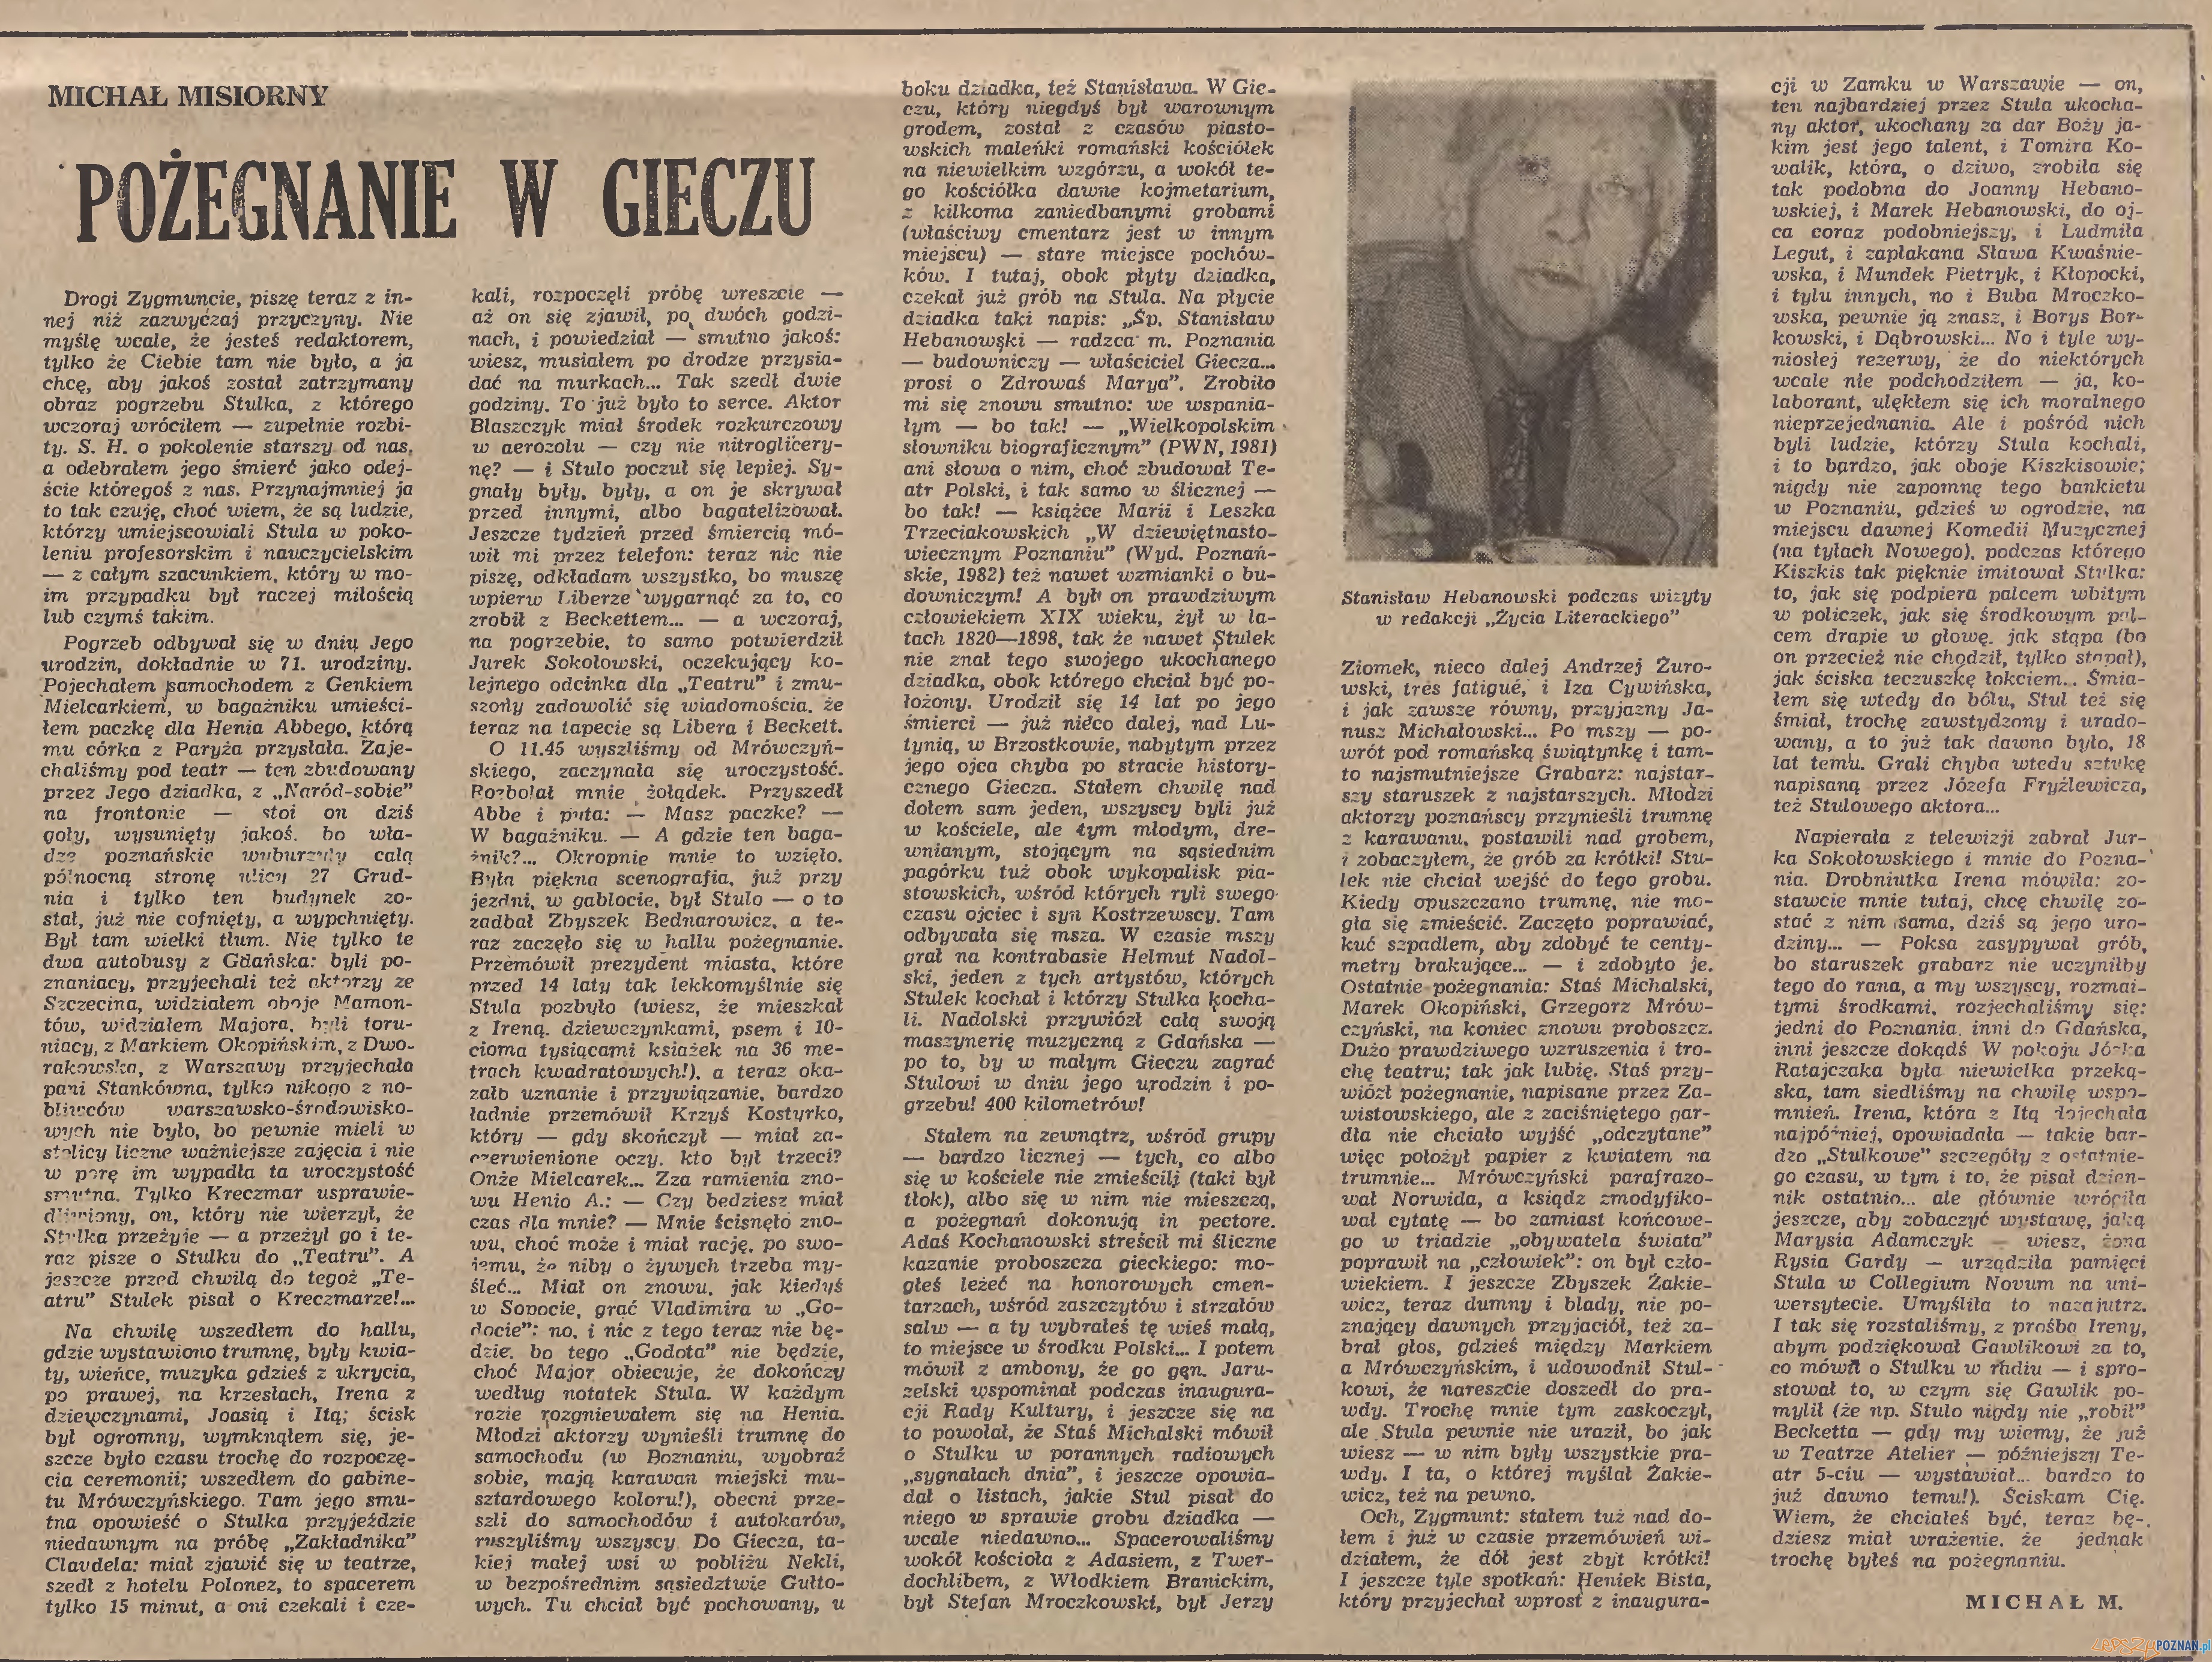 Pożegnanie Hebanowskiego w Życiu Literackim (1983)